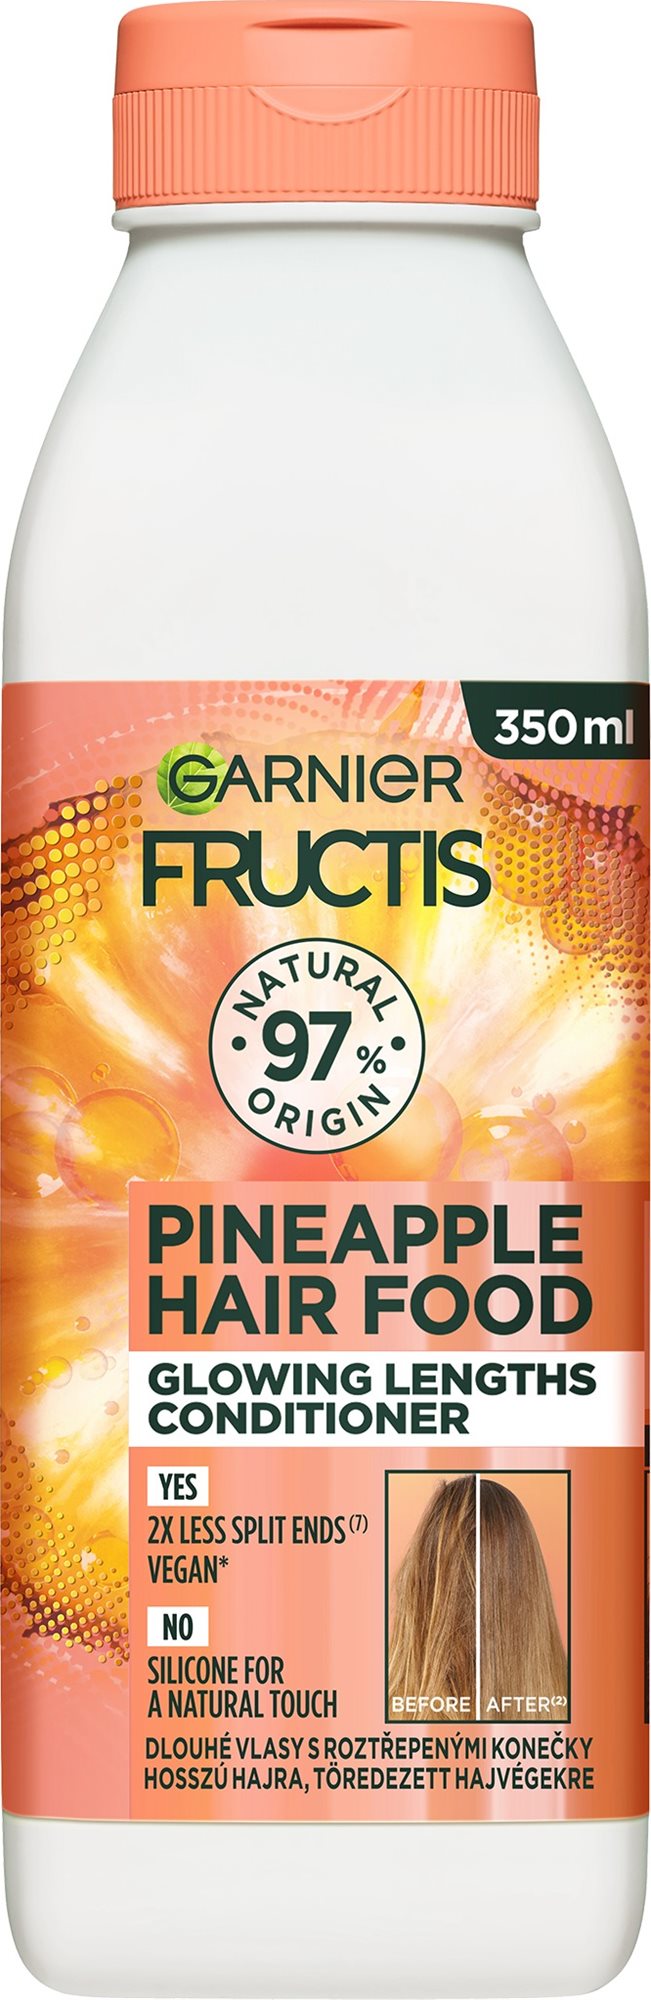 GARNIER Fructis Hair Food ananászos, fényesítő balzsam hosszú hajra 350 ml